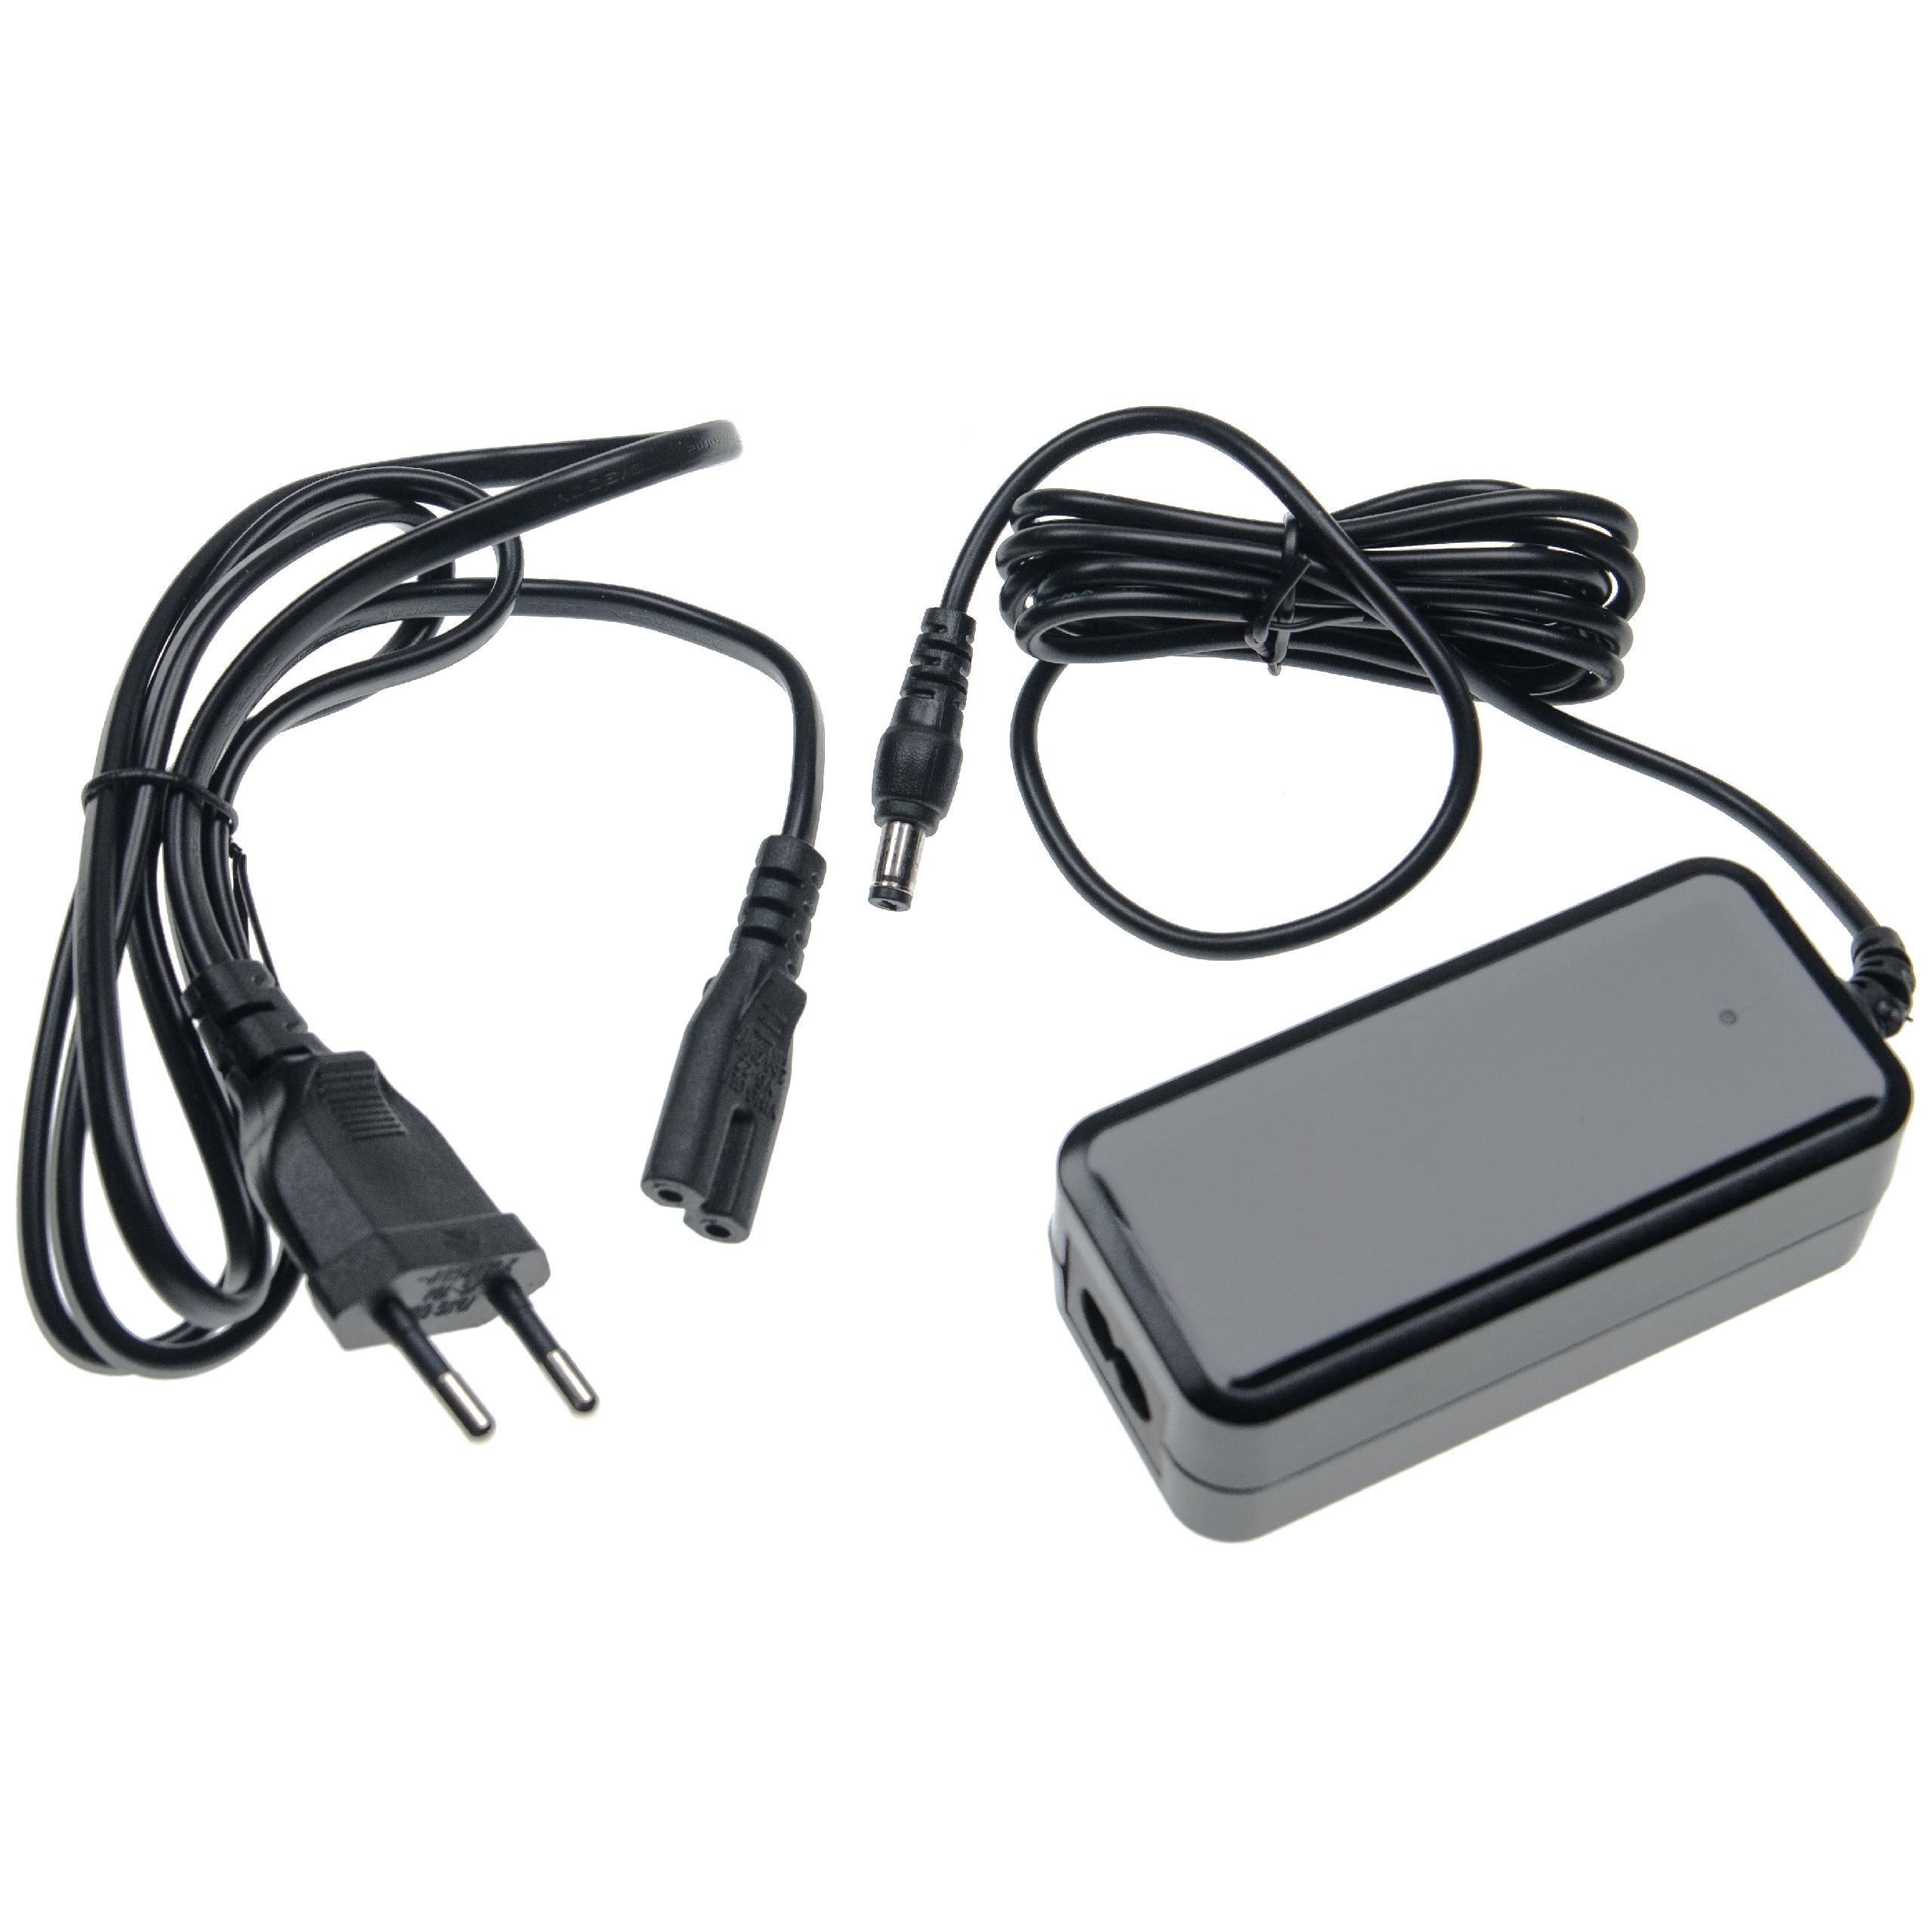 Mains Power Adapter suitable for Hypervolt, MGN1 Massage Gun Hyperice, Tezewa, AsVIVA Hypervolt Massage Device